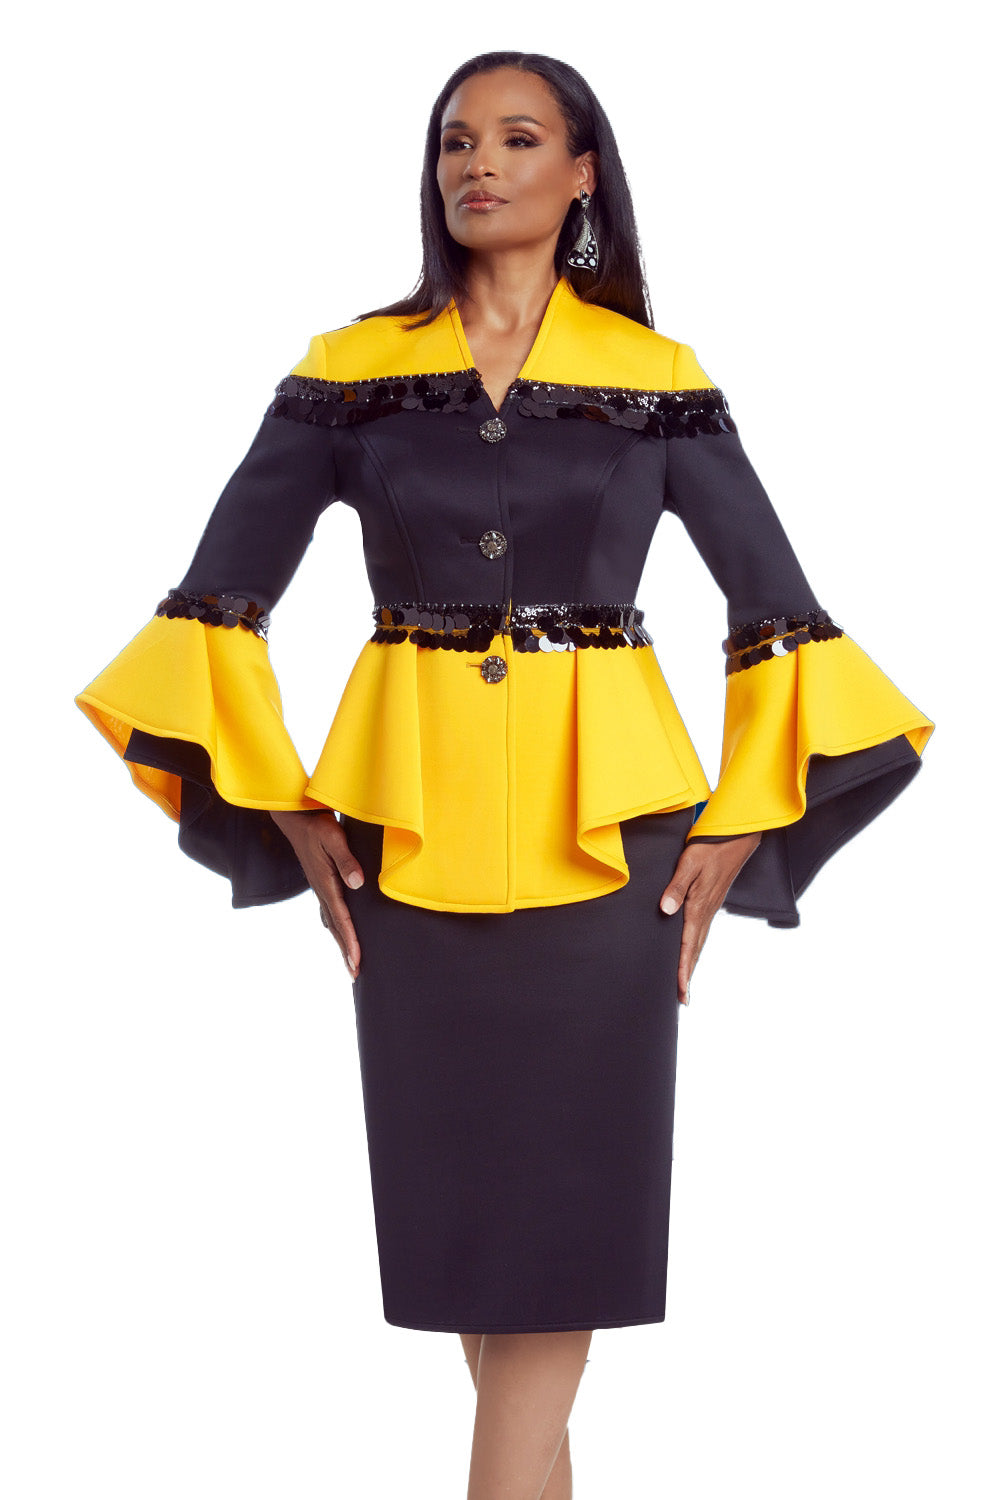 Donna Vinci Skirt Suit 12029 - Church Suits For Less